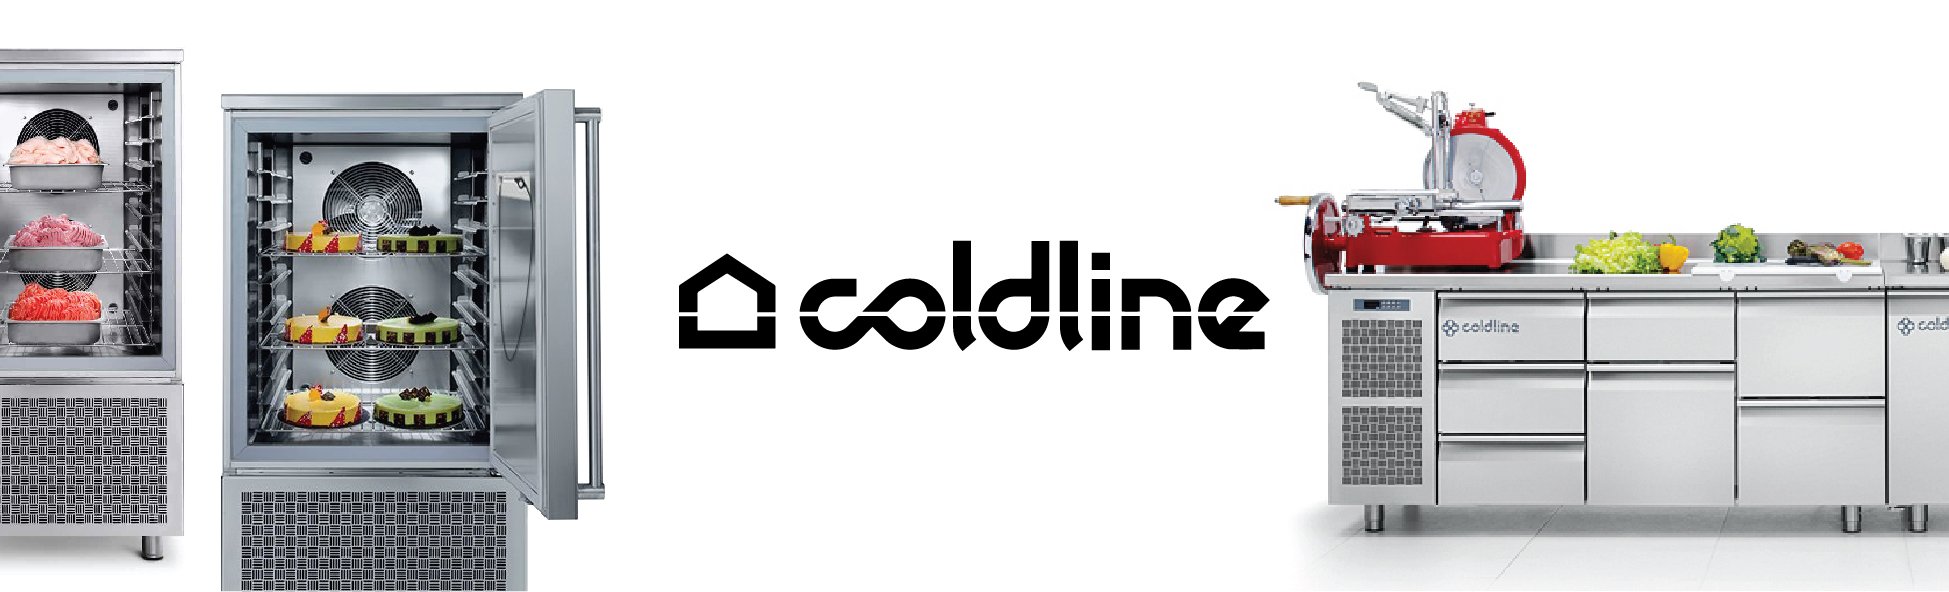 Coldline - Tủ Cấp Đông Châu Âu Bền Bỉ | Tiết Kiệm Điện | Giá Tốt Nhất – United Vision